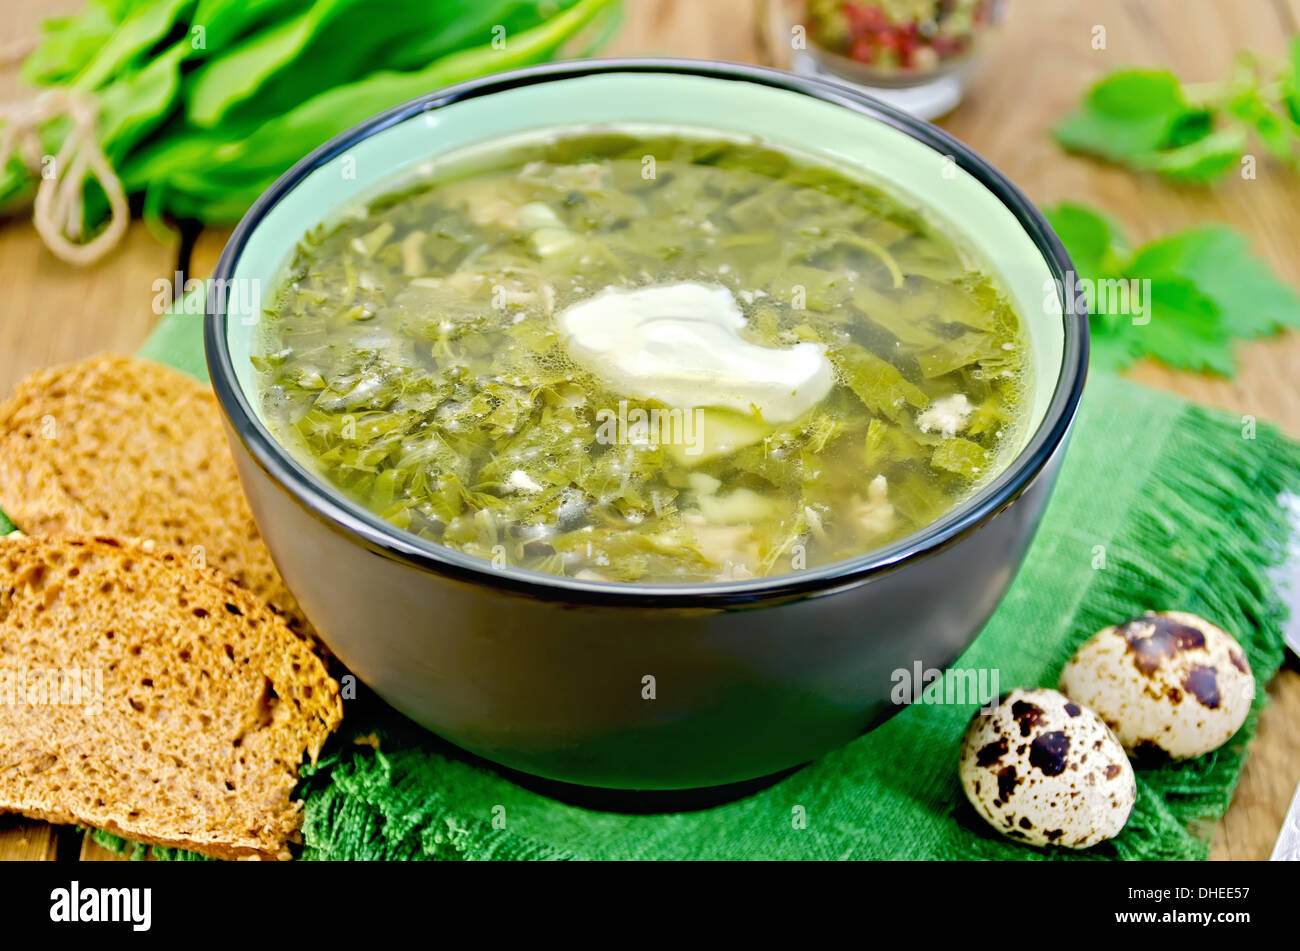 Grüne Suppe von Ampfer, Brennnessel und Spinat in eine Schüssel geben, Wachteleier, Brot, Pfeffer gegen ein Holzbrett Stockfoto